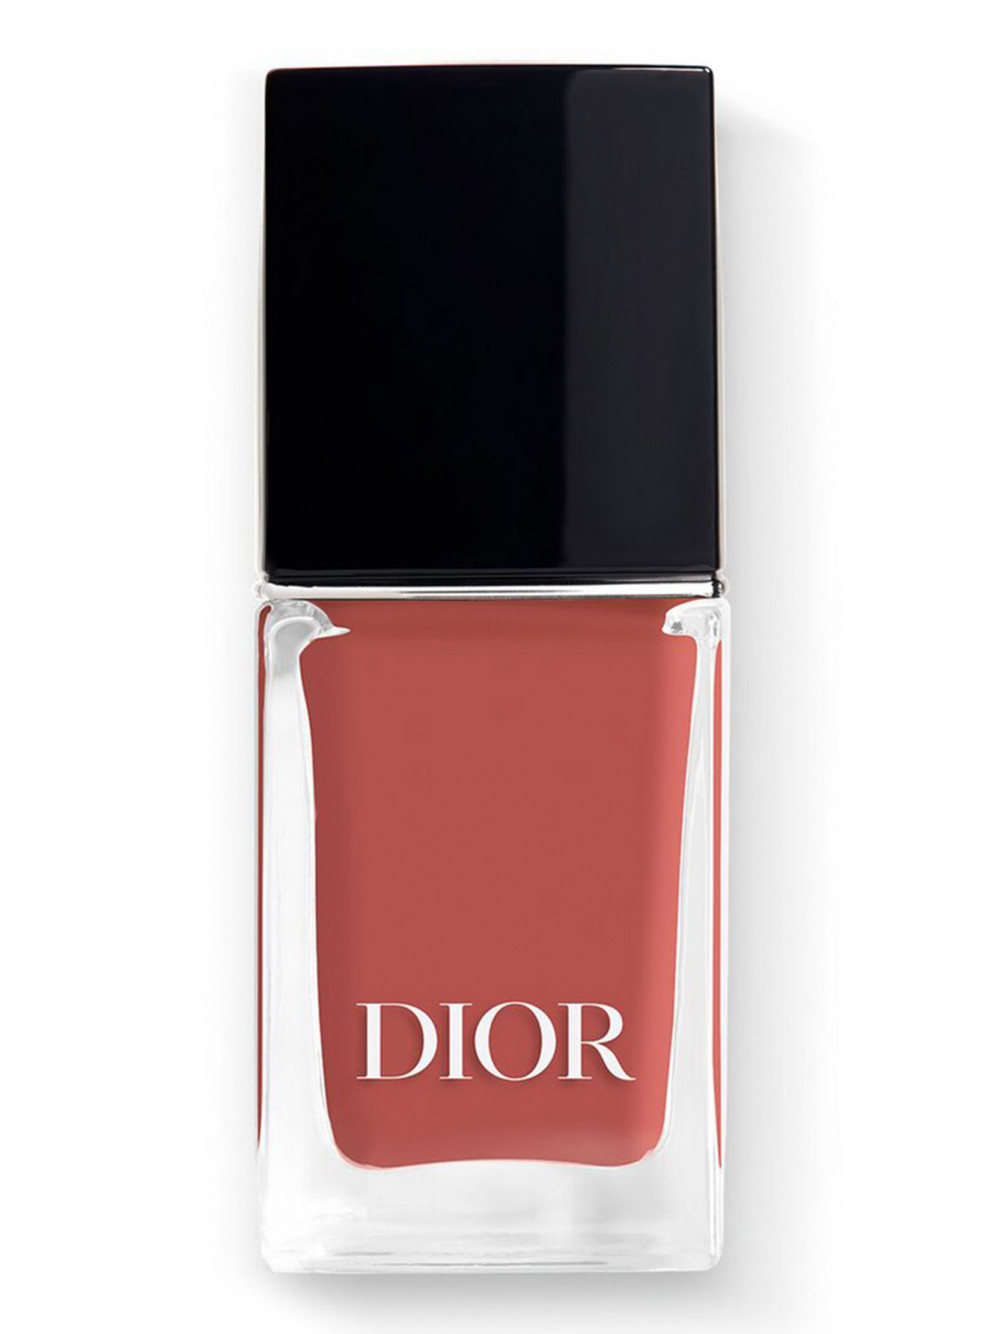 Лак для ногтей с эффектом гелевого покрытия Dior Vernis, 720 Культ, 10 мл - Общий вид